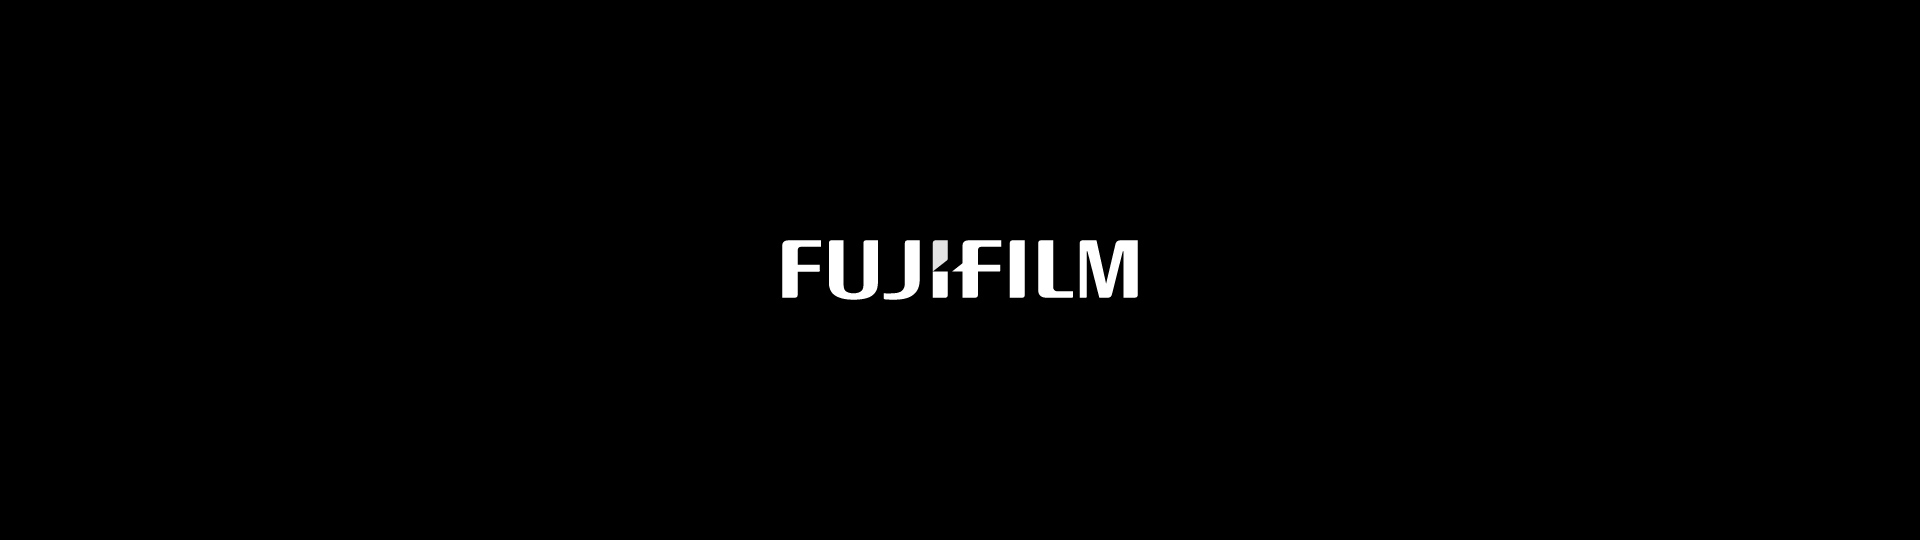 Fujufilm-logo-wide